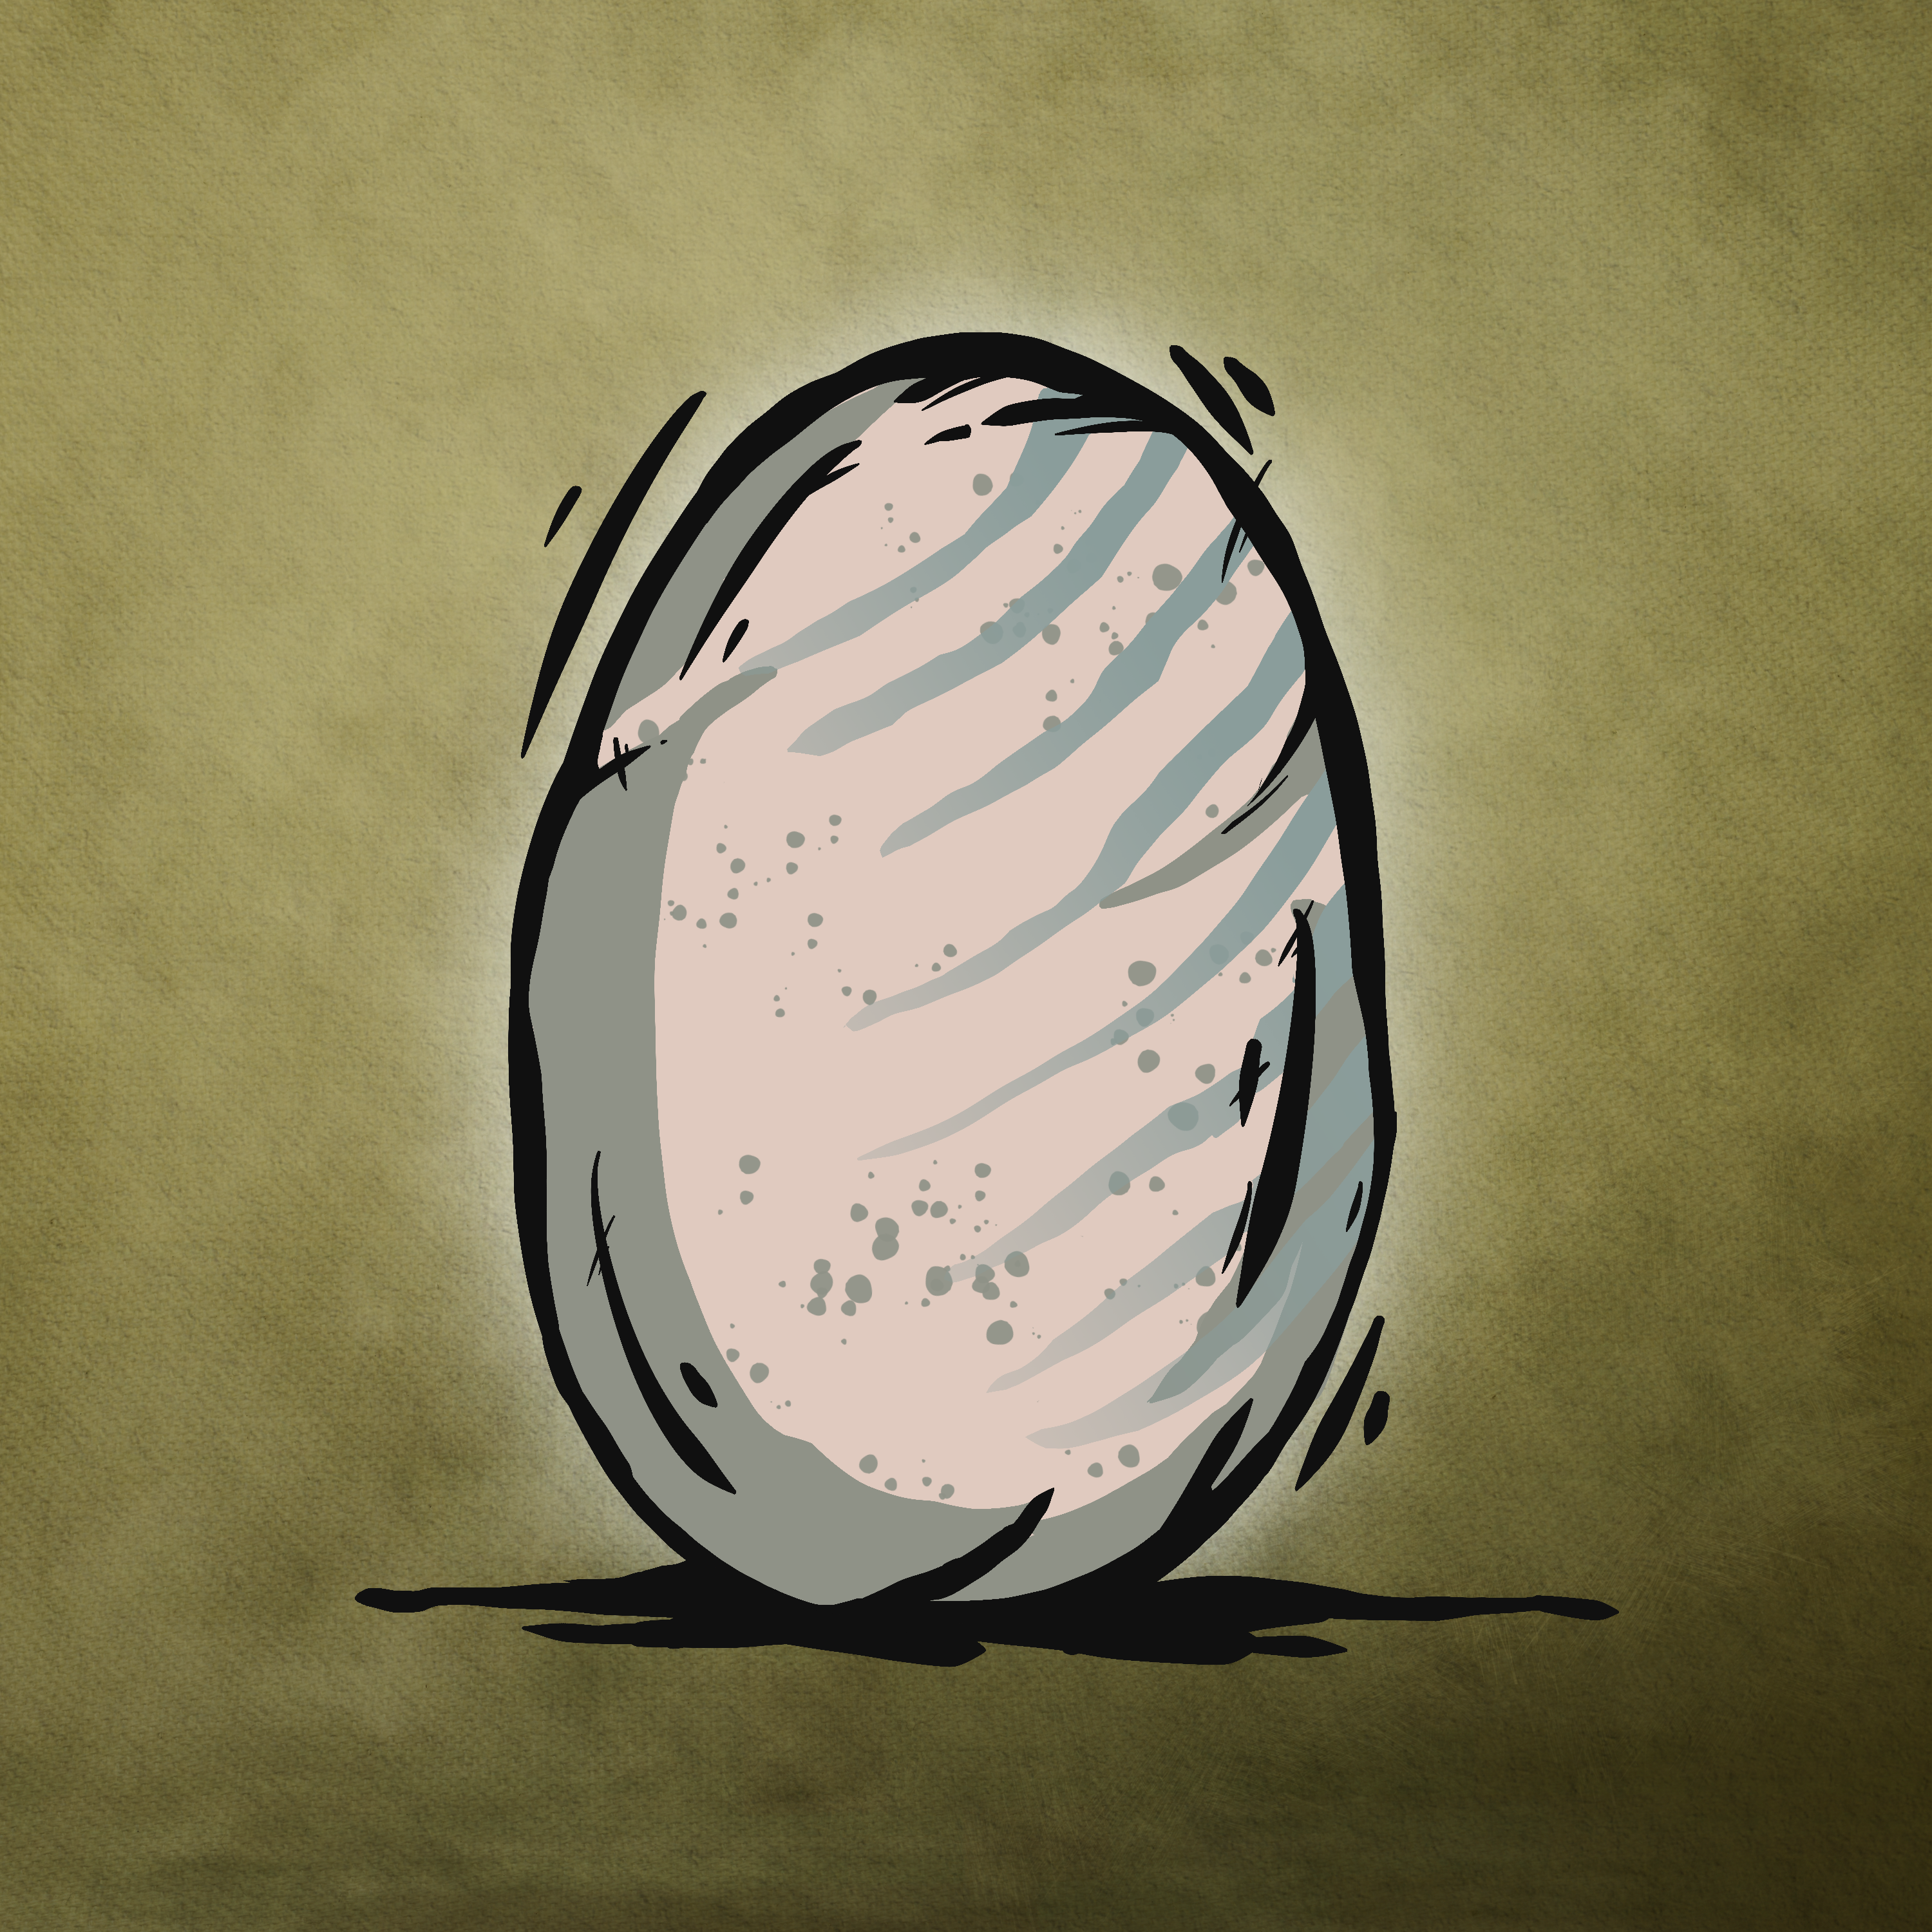 Egg #1172